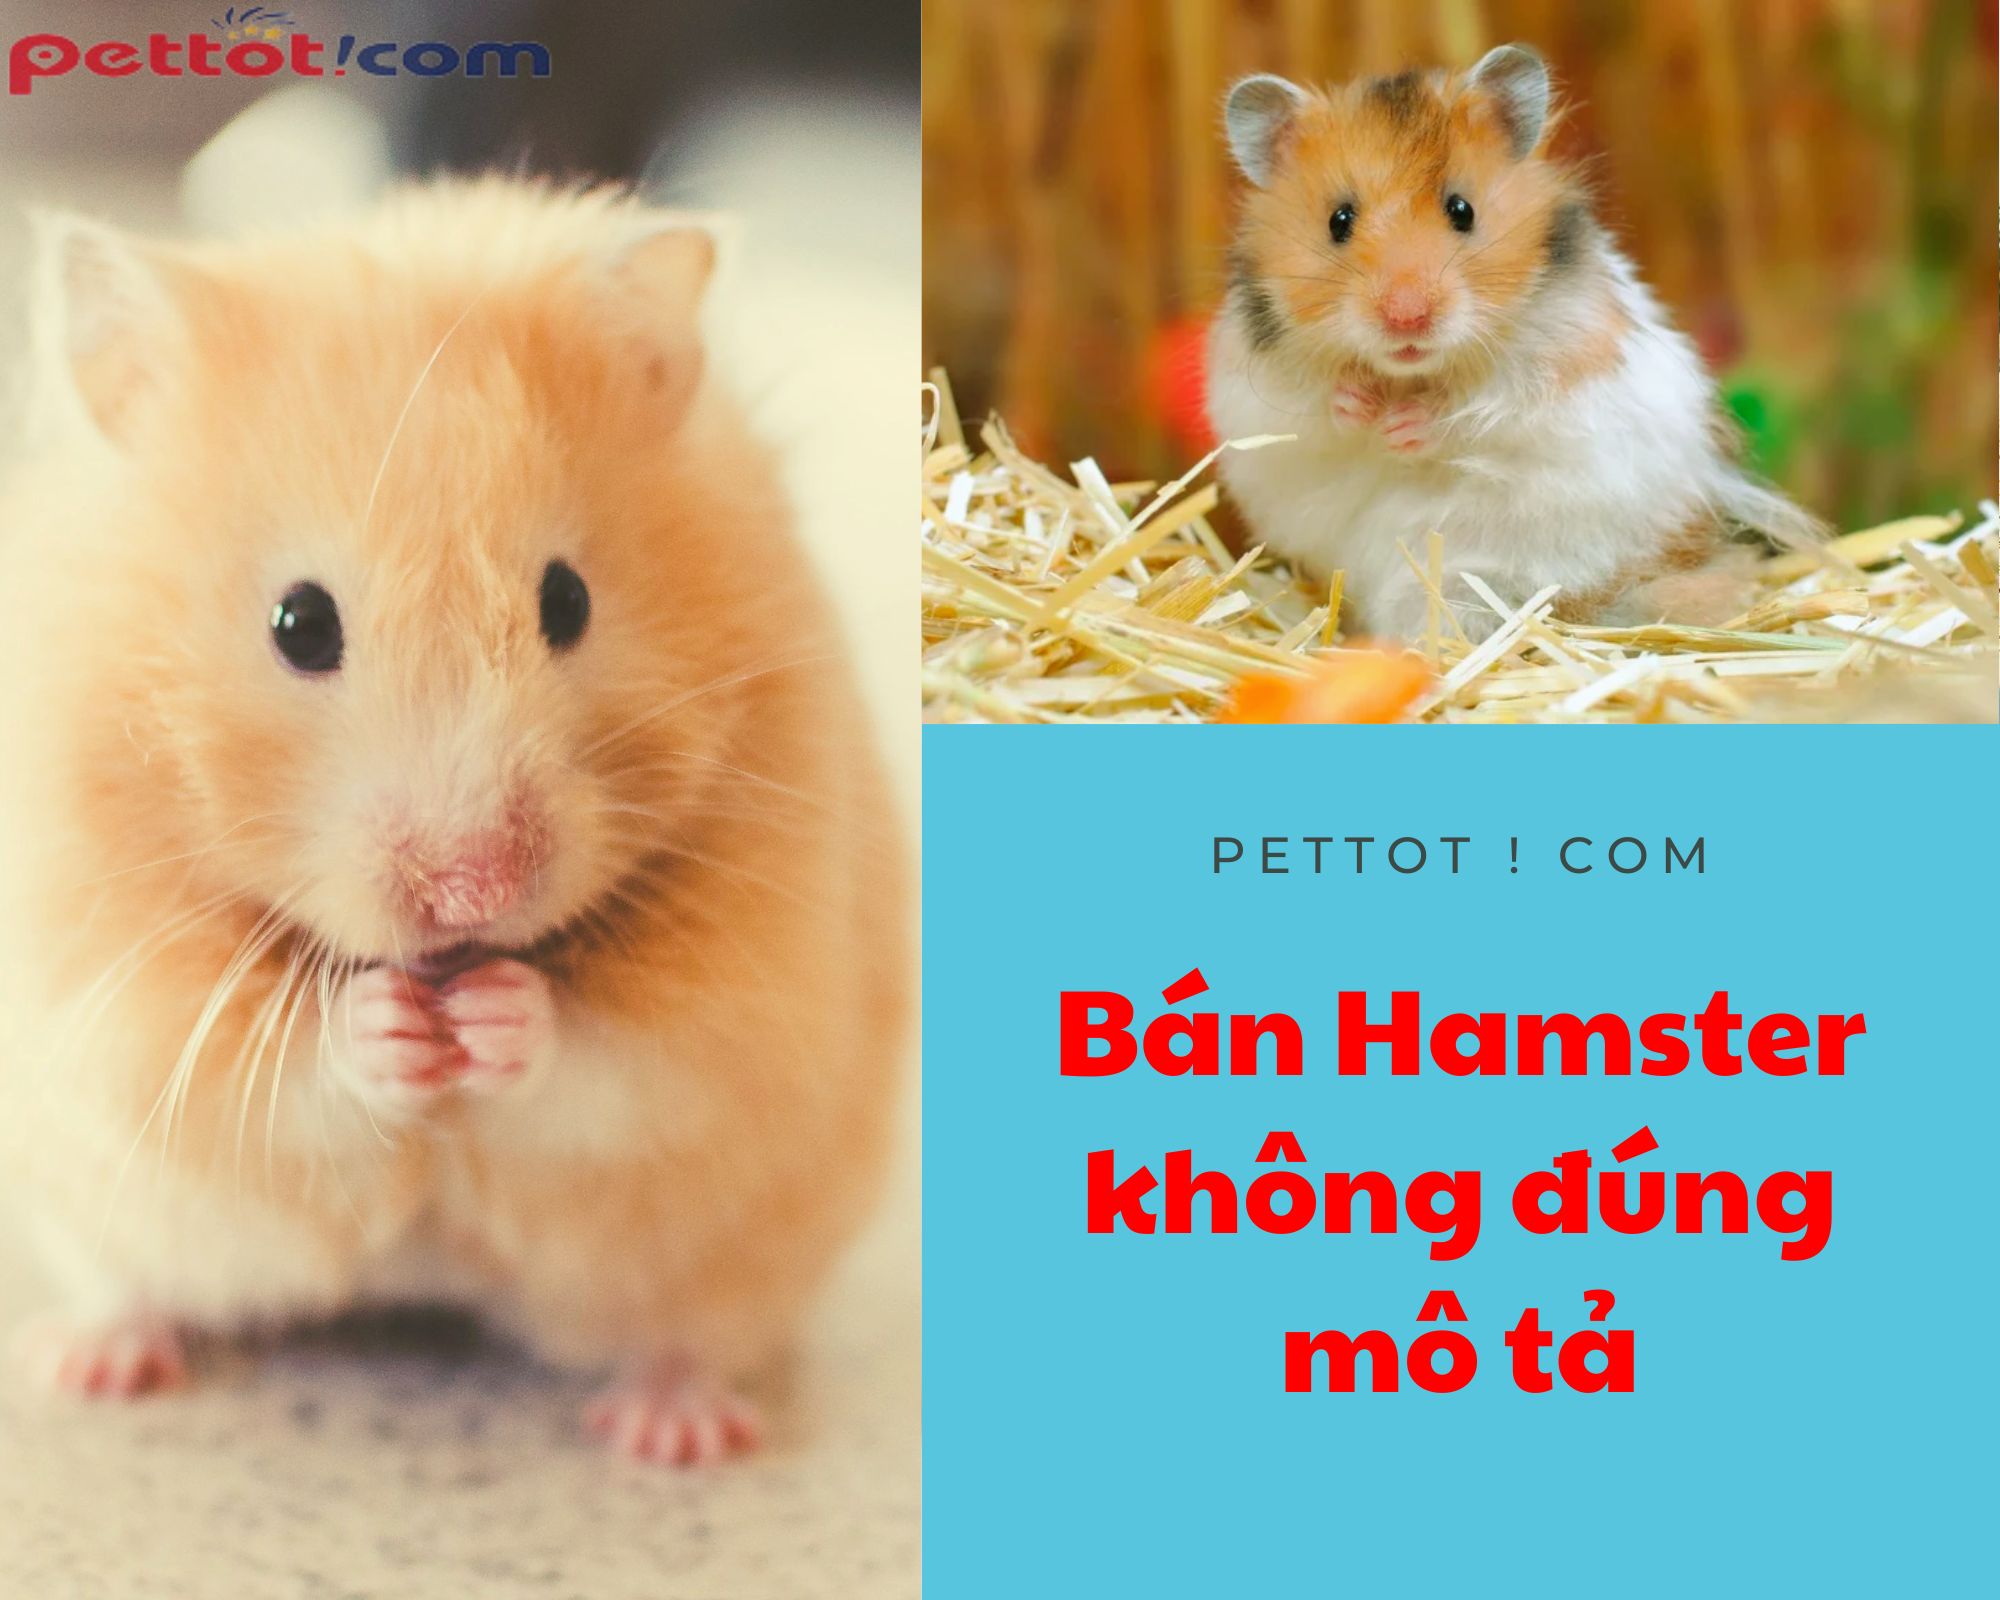 Bán chuột hamster giá tốt không đúng với những thông tin cung cấp